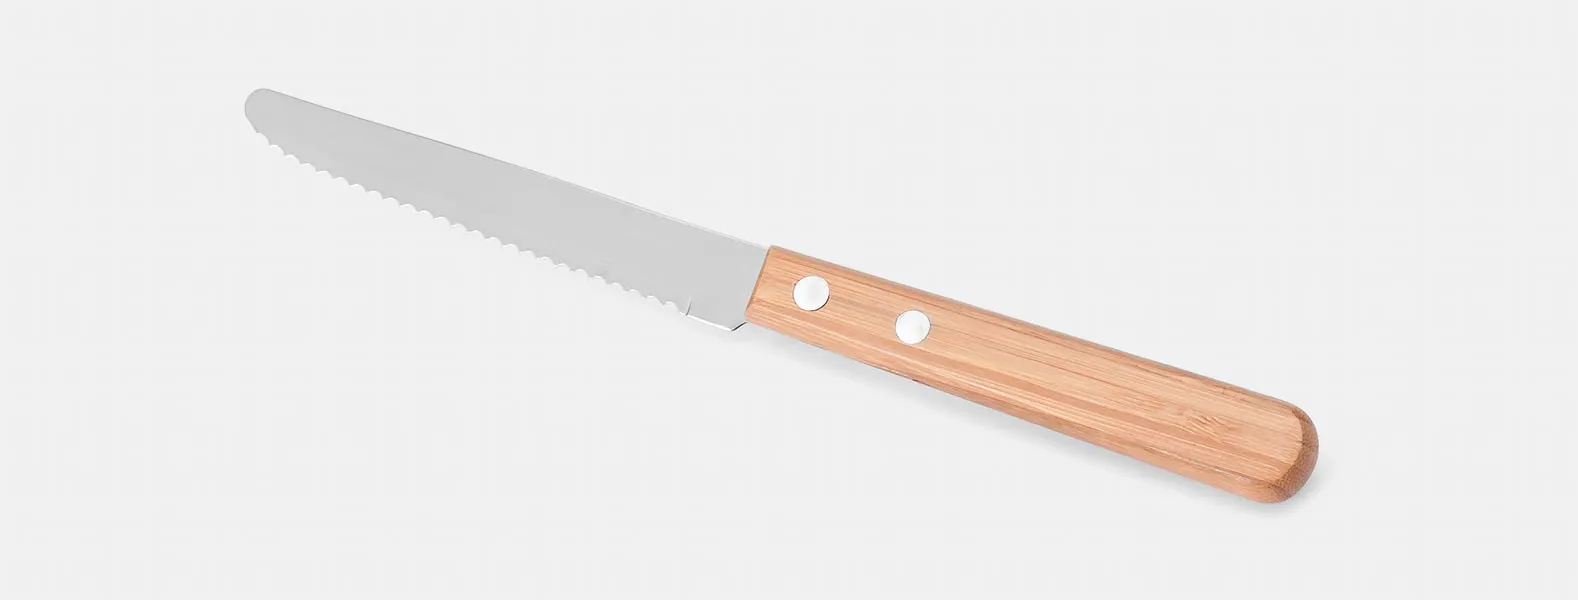 Kit composto por seis peças com cabos em bambu e lâminas em aço Inox com rebites resistentes, sendo uma faca 8”, uma faca 7”, uma chaira 8”, um cutelo 6”, uma faca 5” para desossar e uma faca 4” de frutas. Estão organizados em fita elástica preta no interior de um estojo.